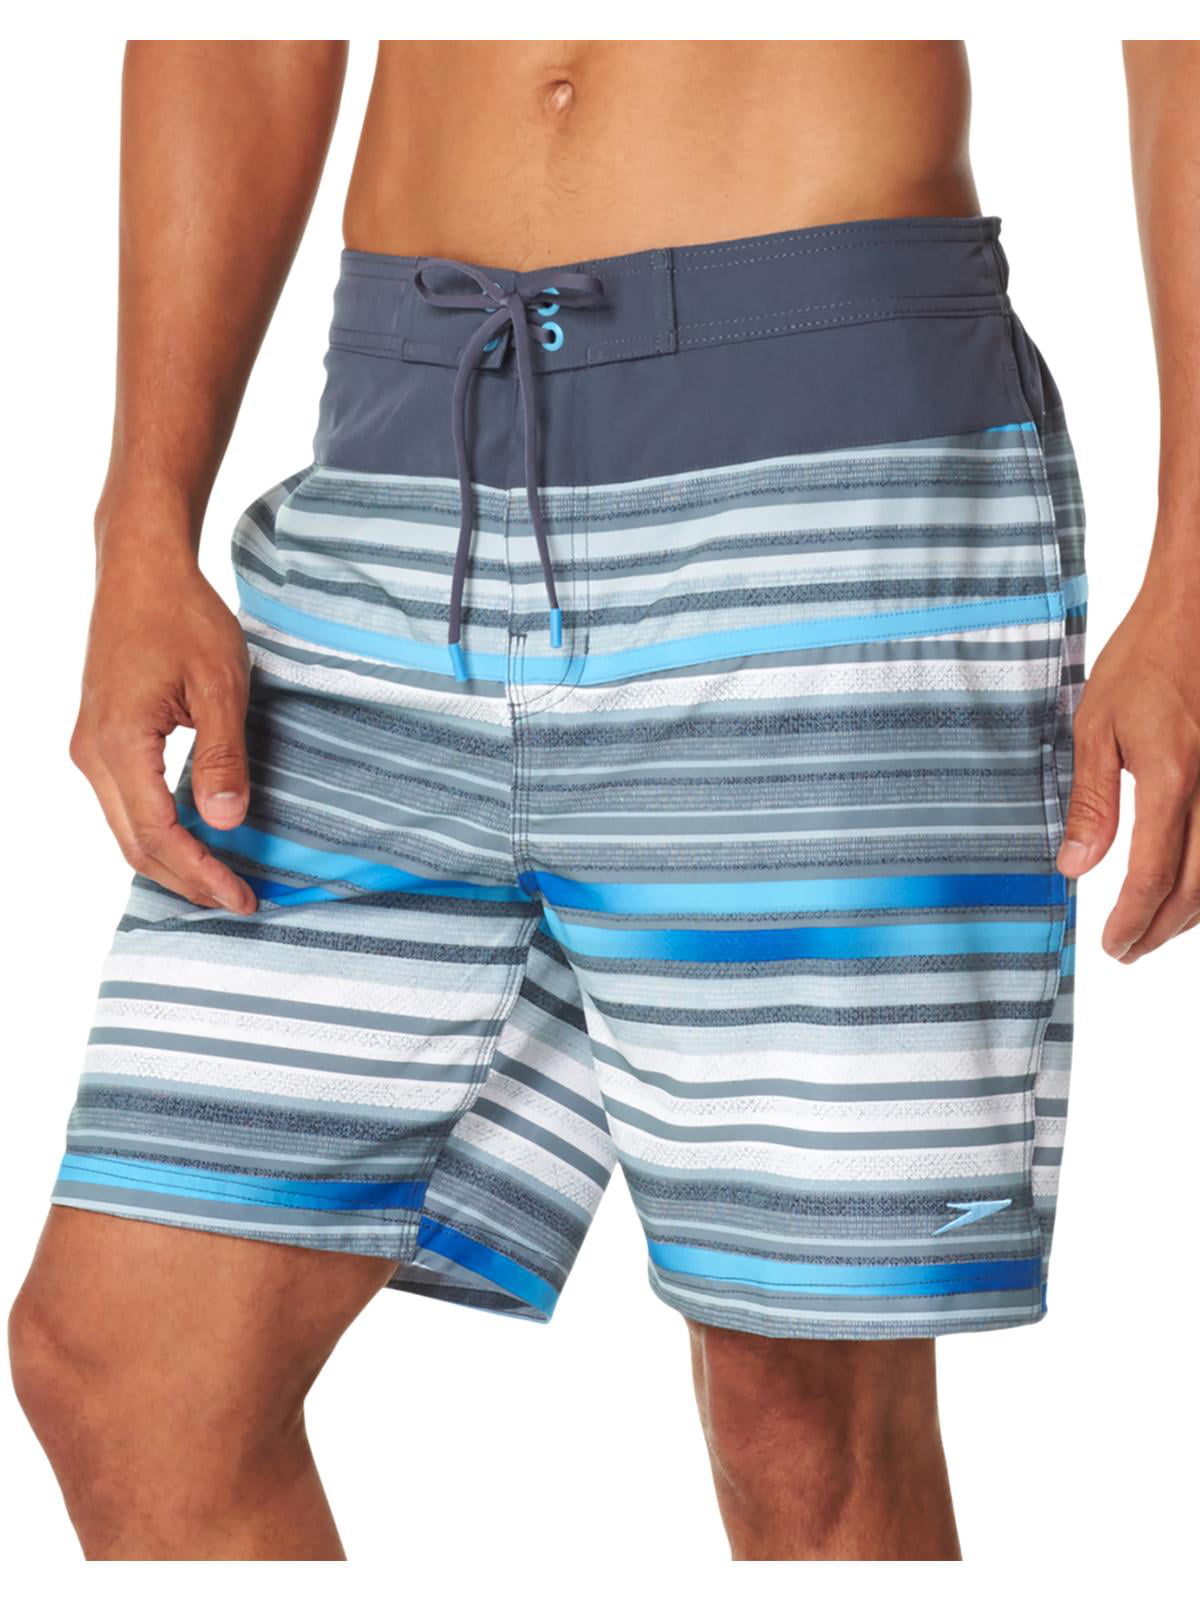 Speedo - Speedo Mens Printed Beachwear Swim Trunks Gray S - Walmart.com ...